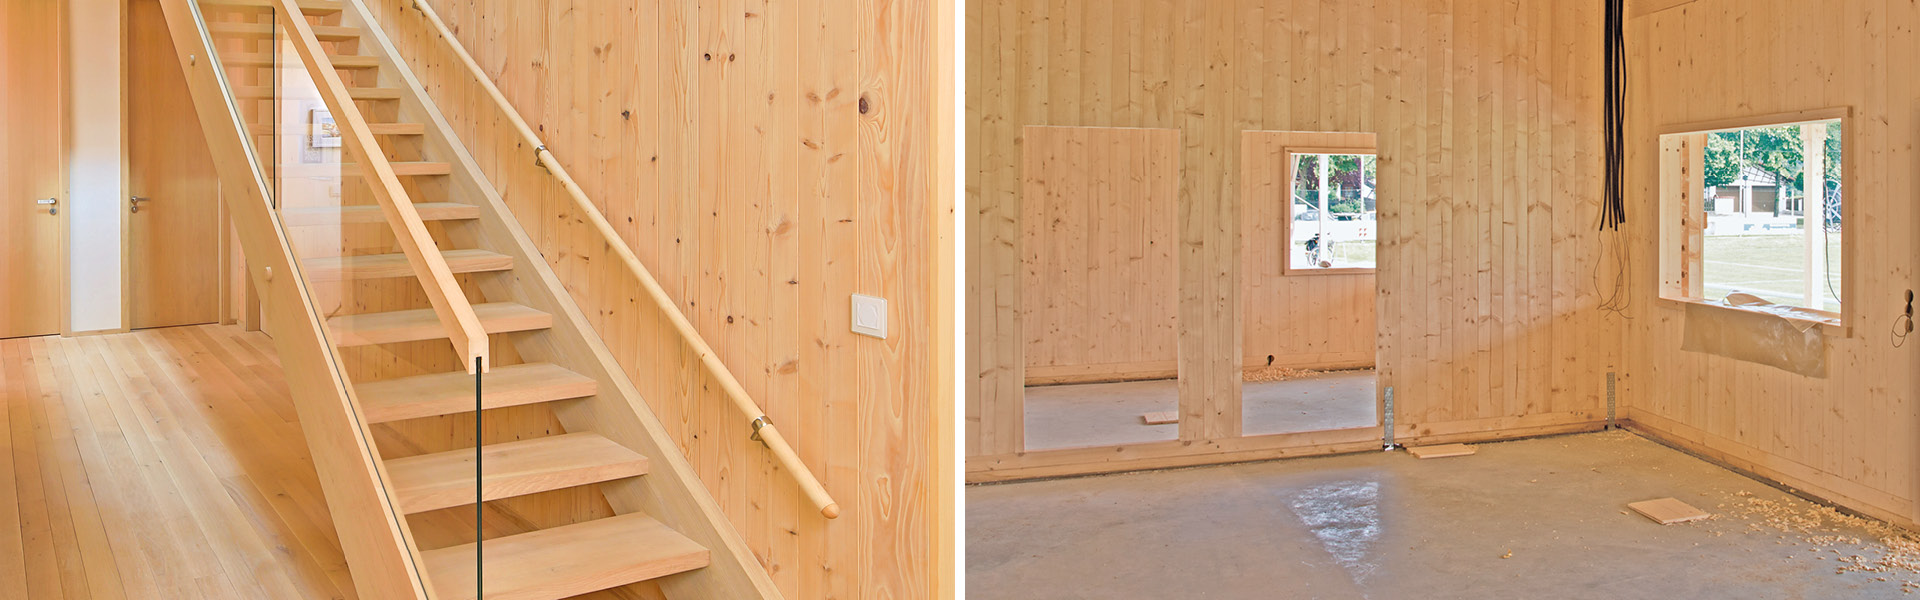 Foto-Collage eines Holzhauses, das bereits bezugsfertig ist und einer Baustelle eines Holzhauses.